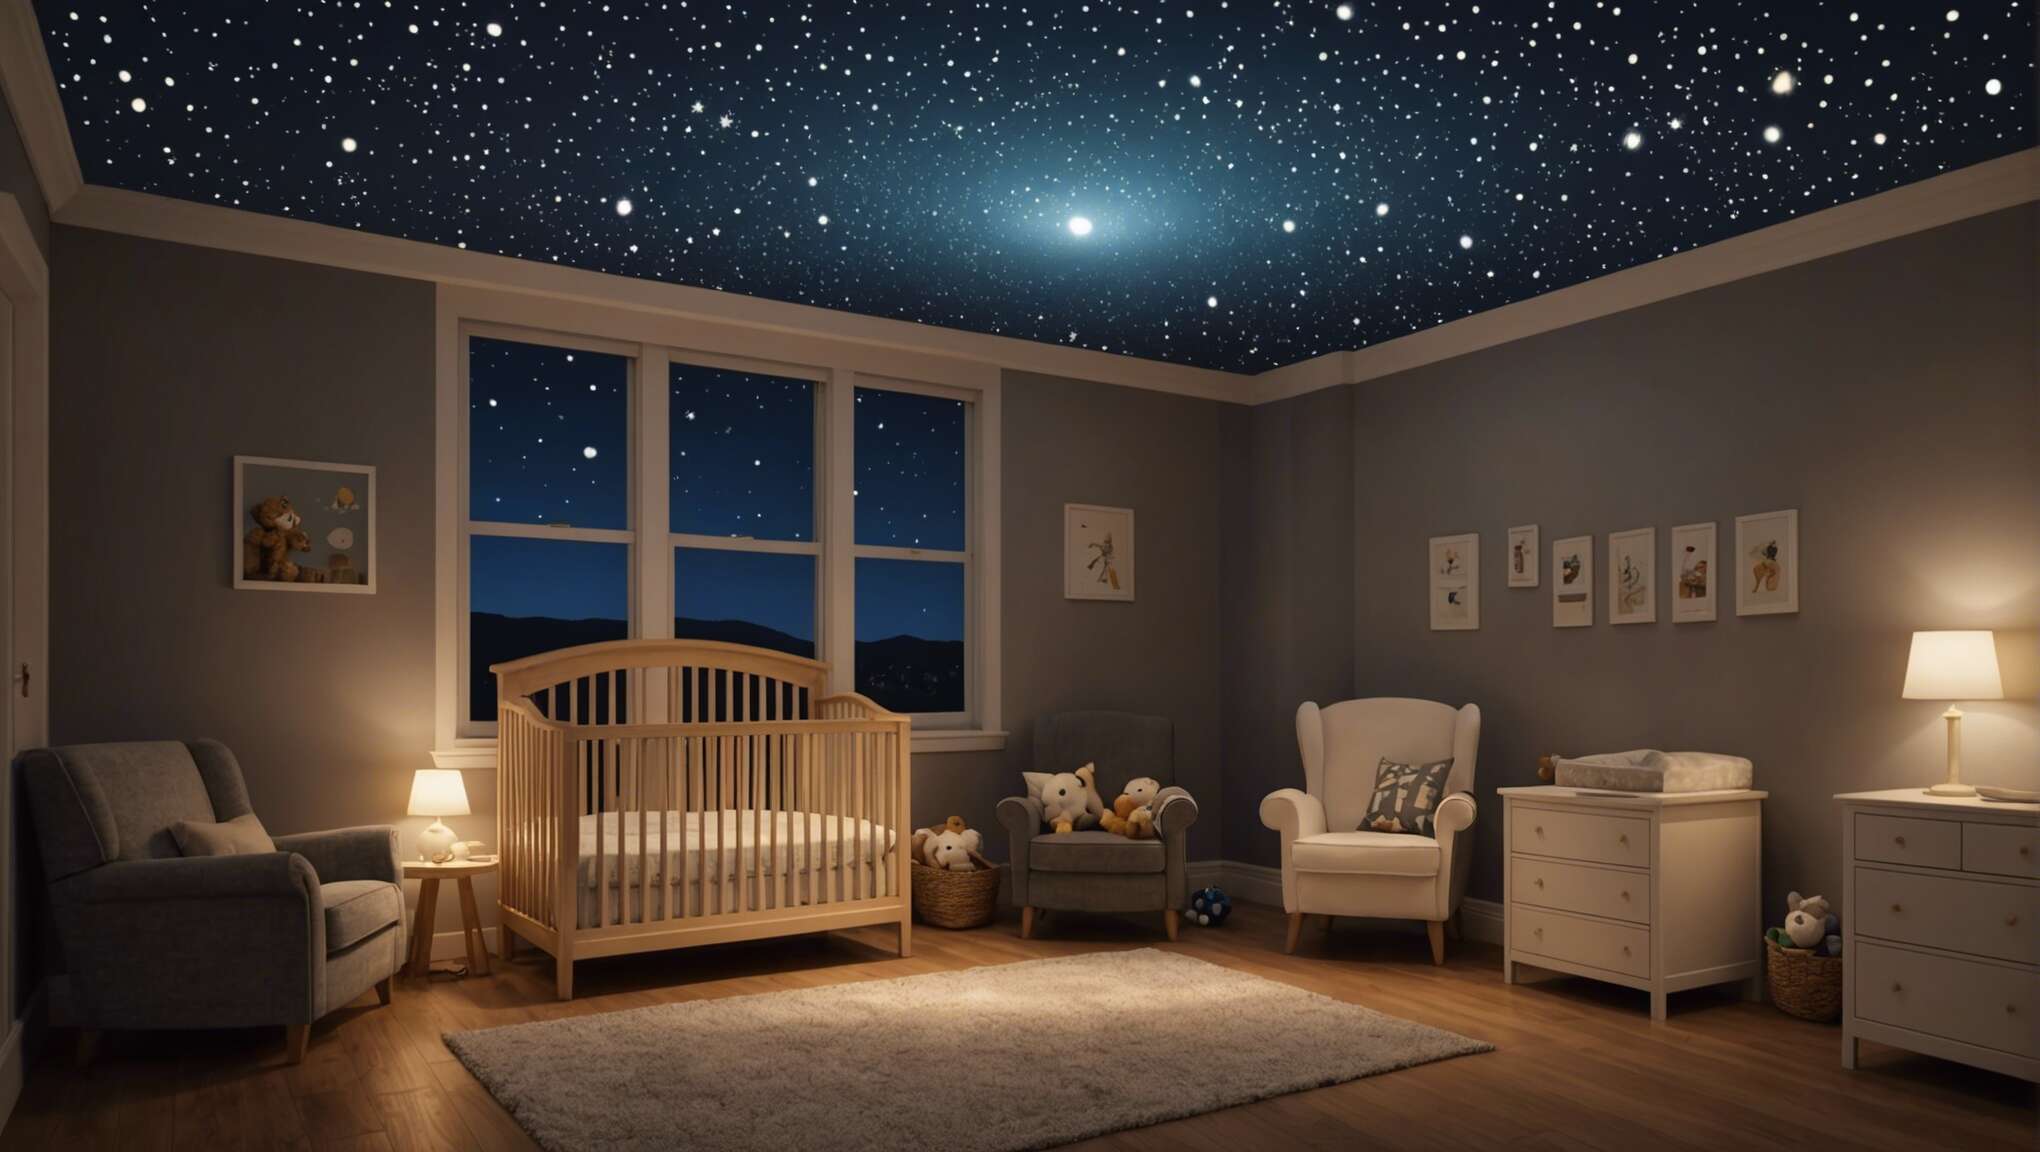 Projection lumineuse au plafond : créer un univers apaisant pour bébé